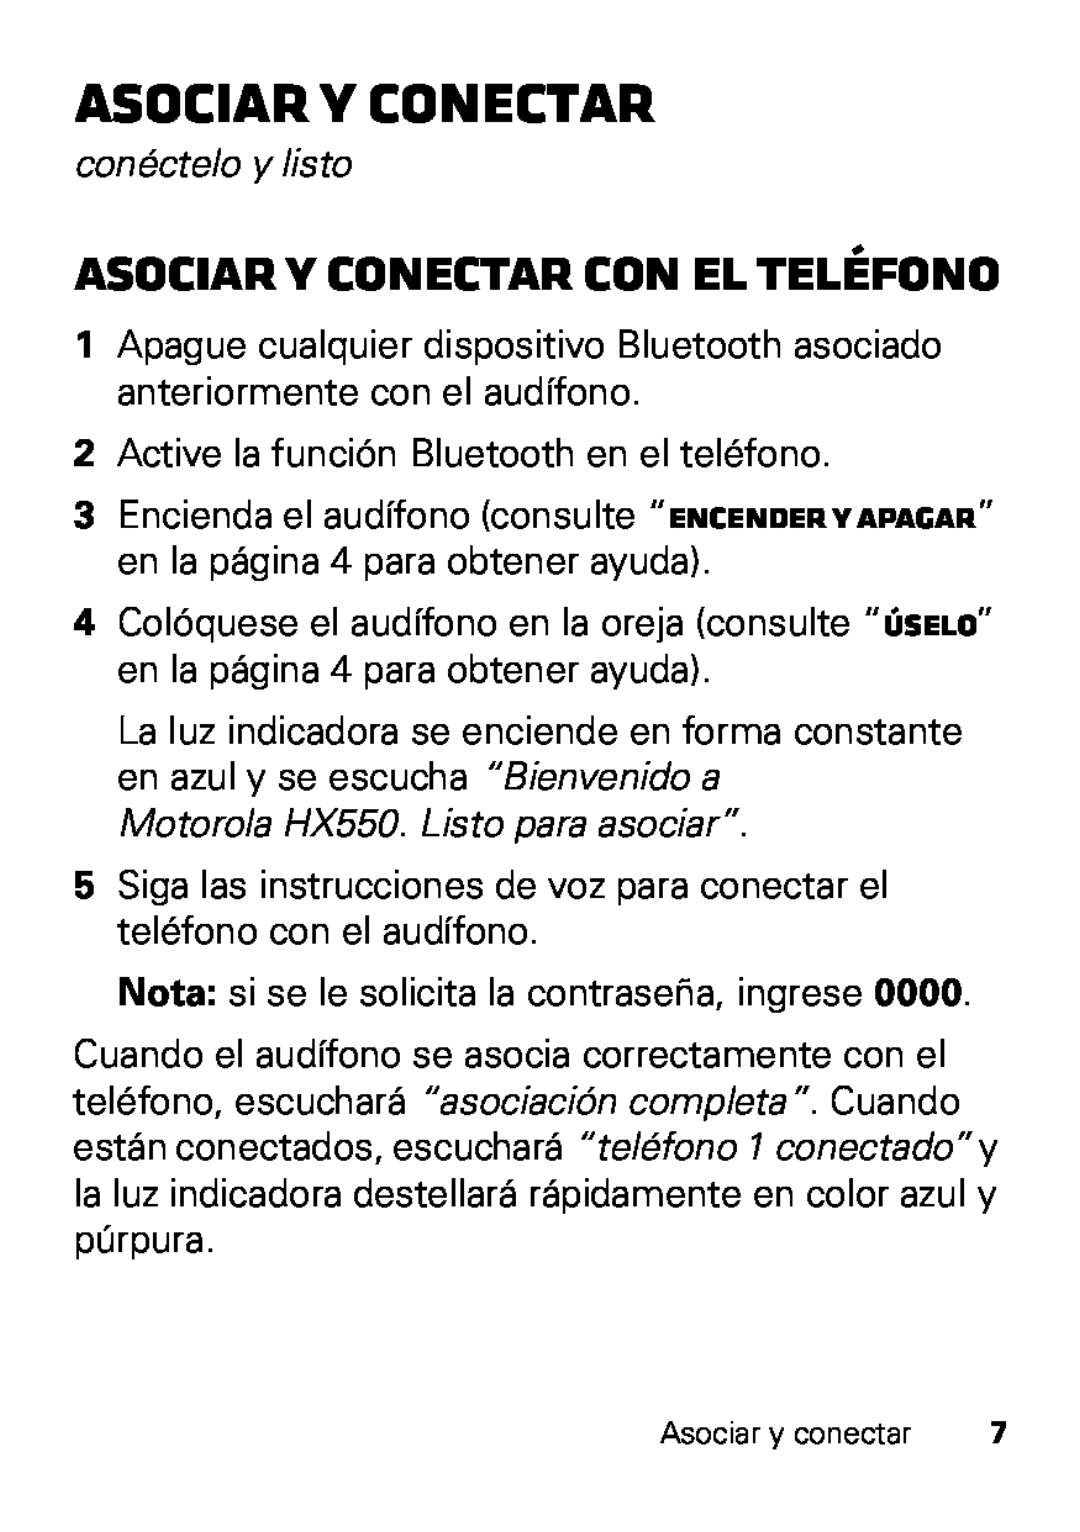 Motorola manual Asociar y conectar con el teléfono, conéctelo y listo, Motorola HX550. Listo para asociar” 